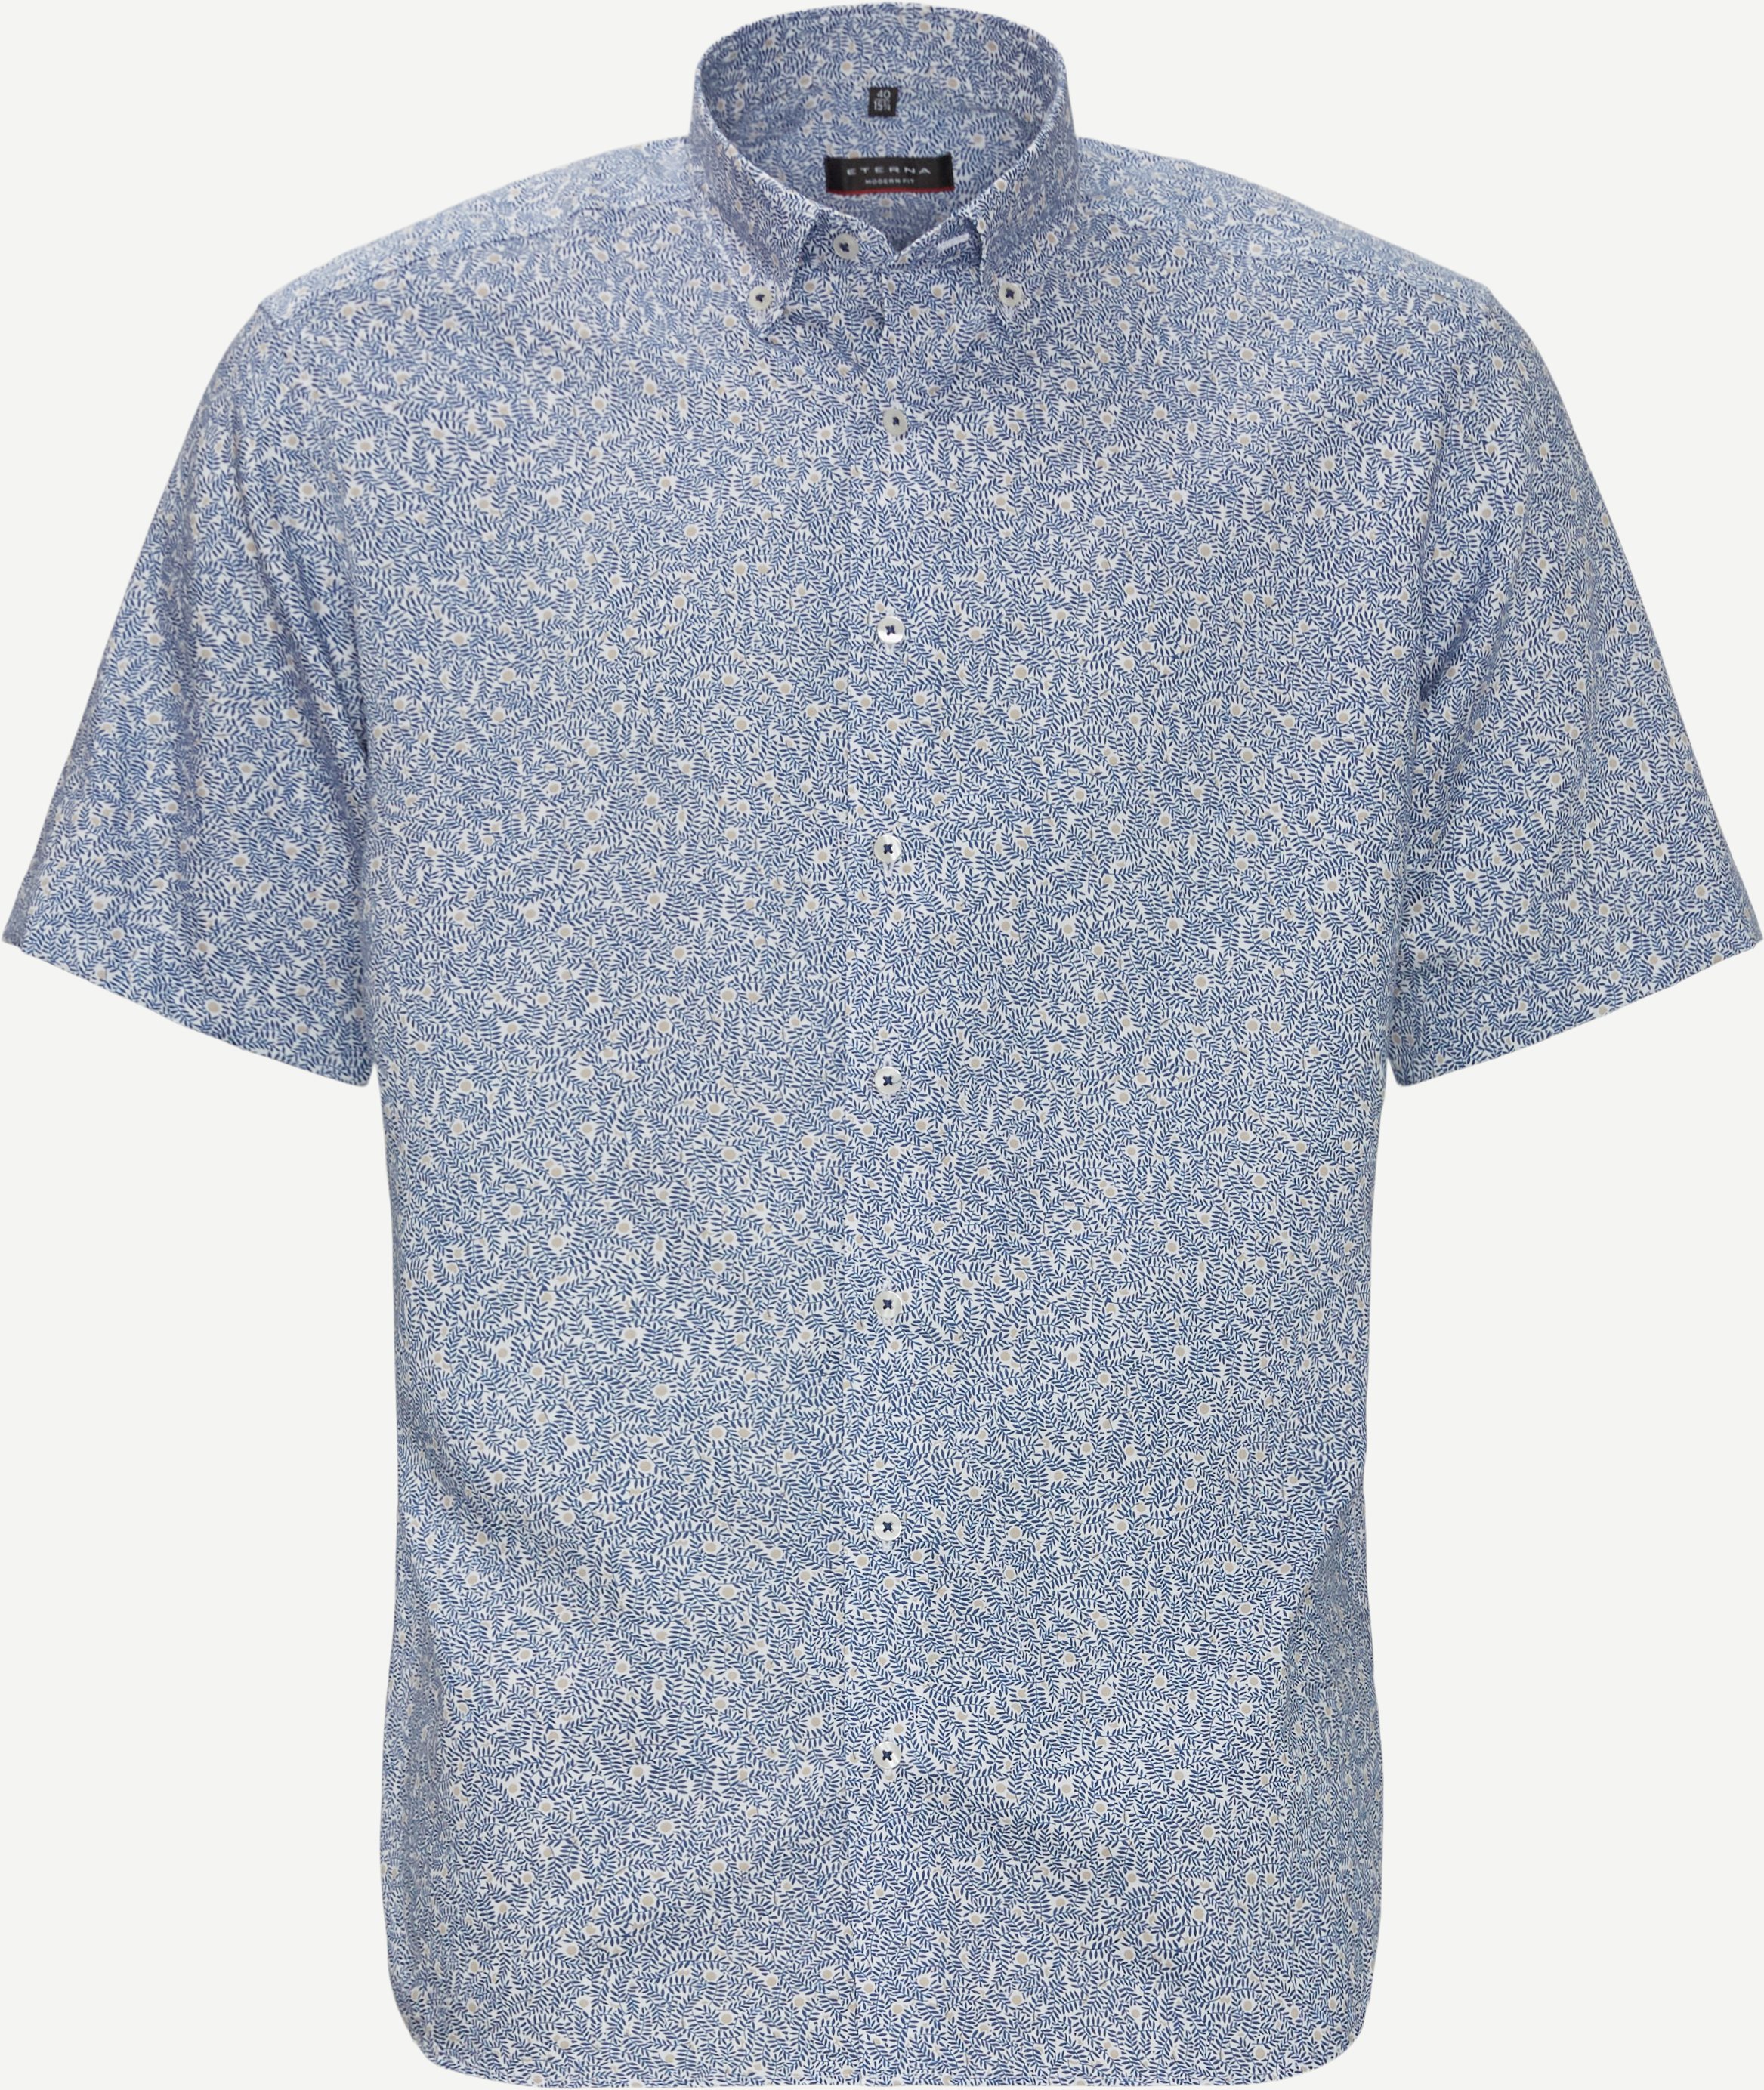 4027 Kortærmet Skjorte - Kortærmede skjorter - Modern fit - Blå